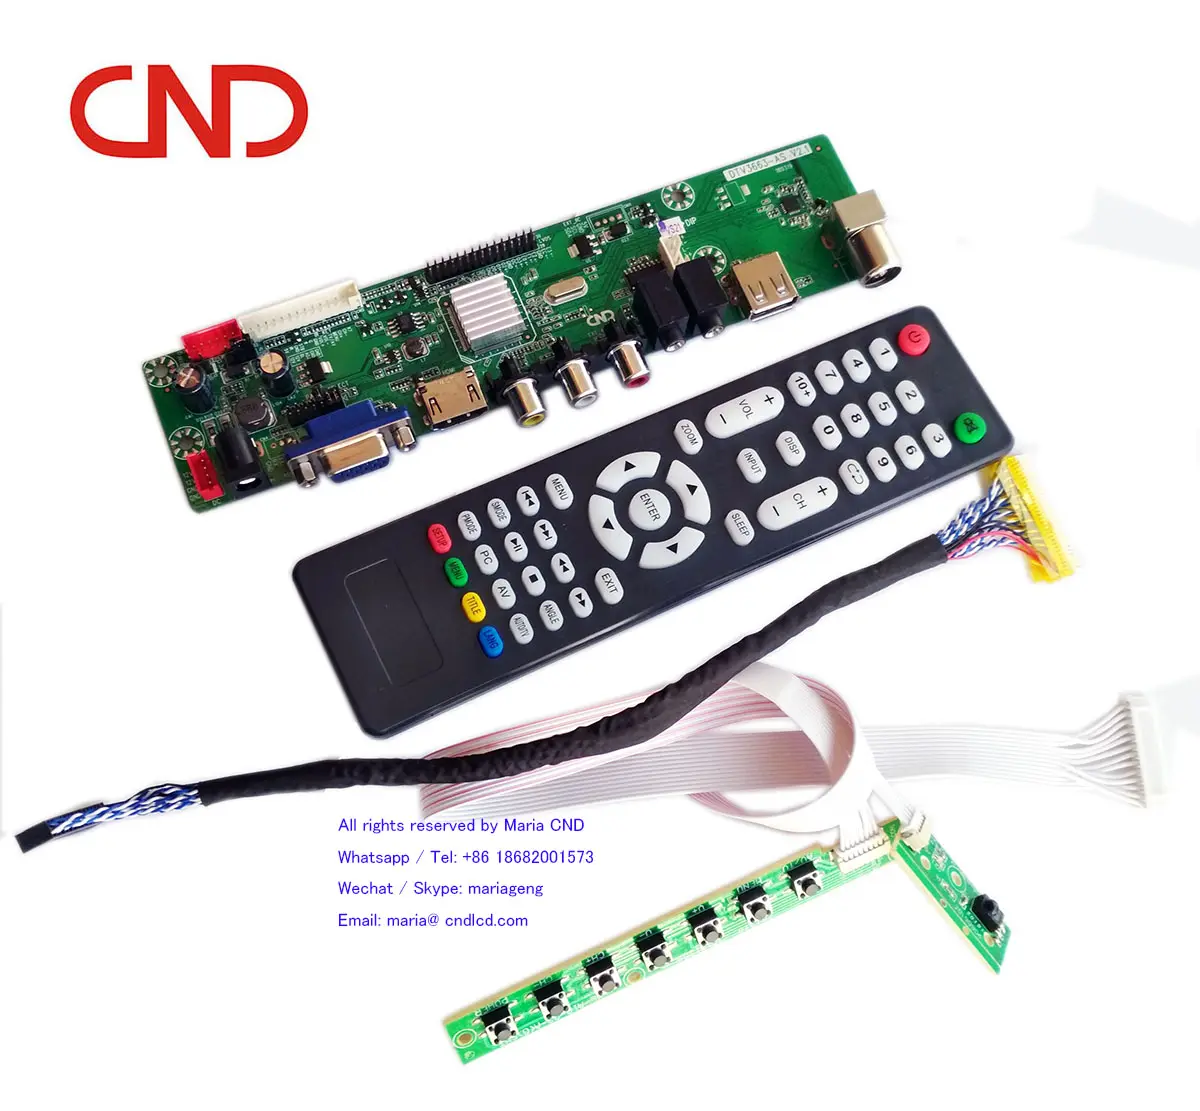 CND Suku Cadang TV Universal Samsung, V56 V59 SKD Kit LED TV Jumper Kartu Motherboard